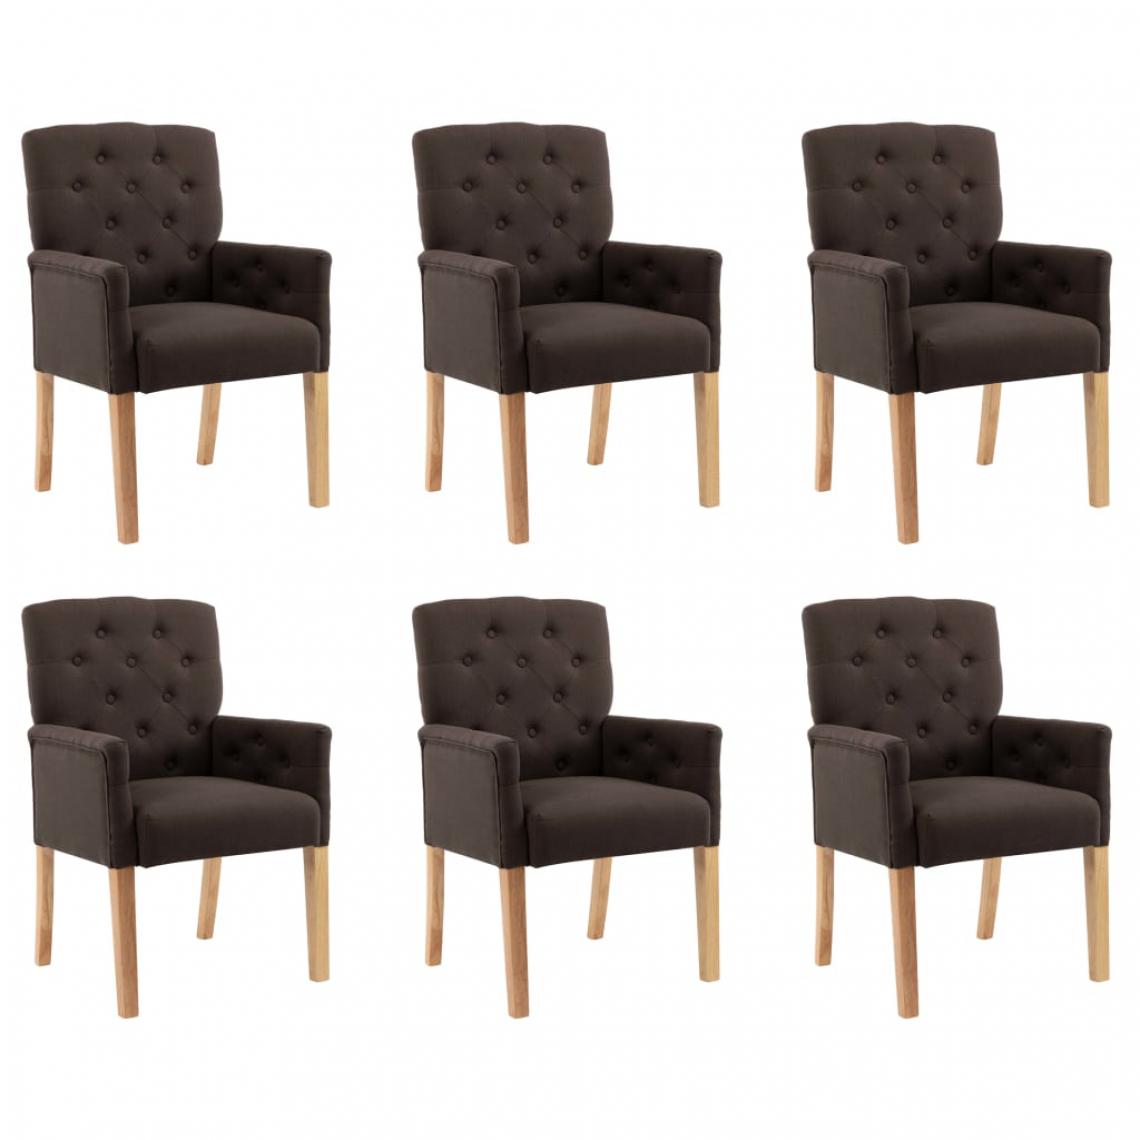 Icaverne - Superbe Fauteuils et chaises gamme Ouagadougou Chaises de salle à manger avec accoudoirs 6 pcs Marron Tissu - Chaises